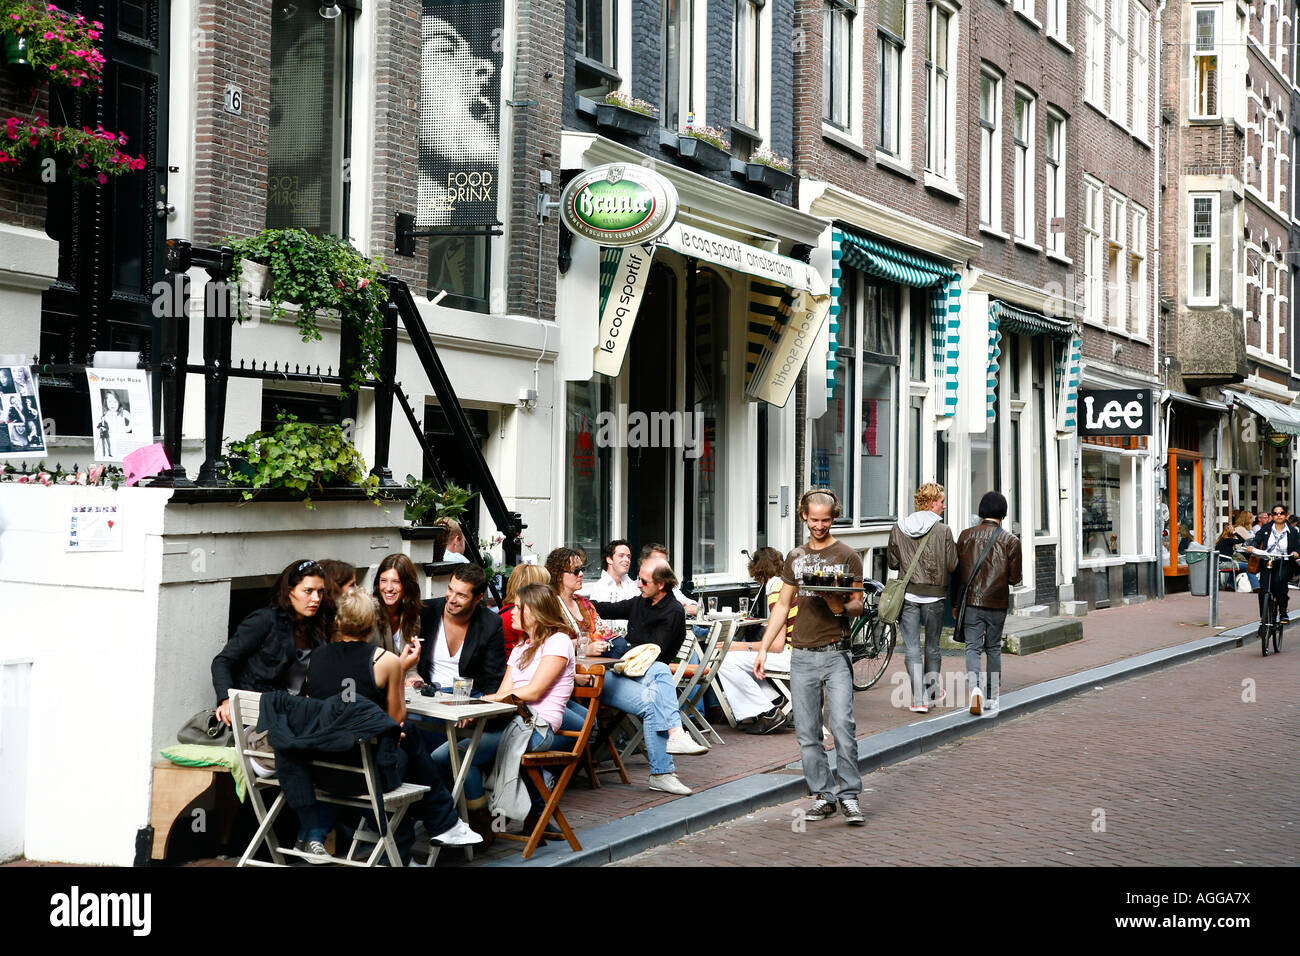 Raadhuisstraat une rue avec des boutiques et cafés dans le quartier du Jordaan Amsterdam Pays-Bas Banque D'Images